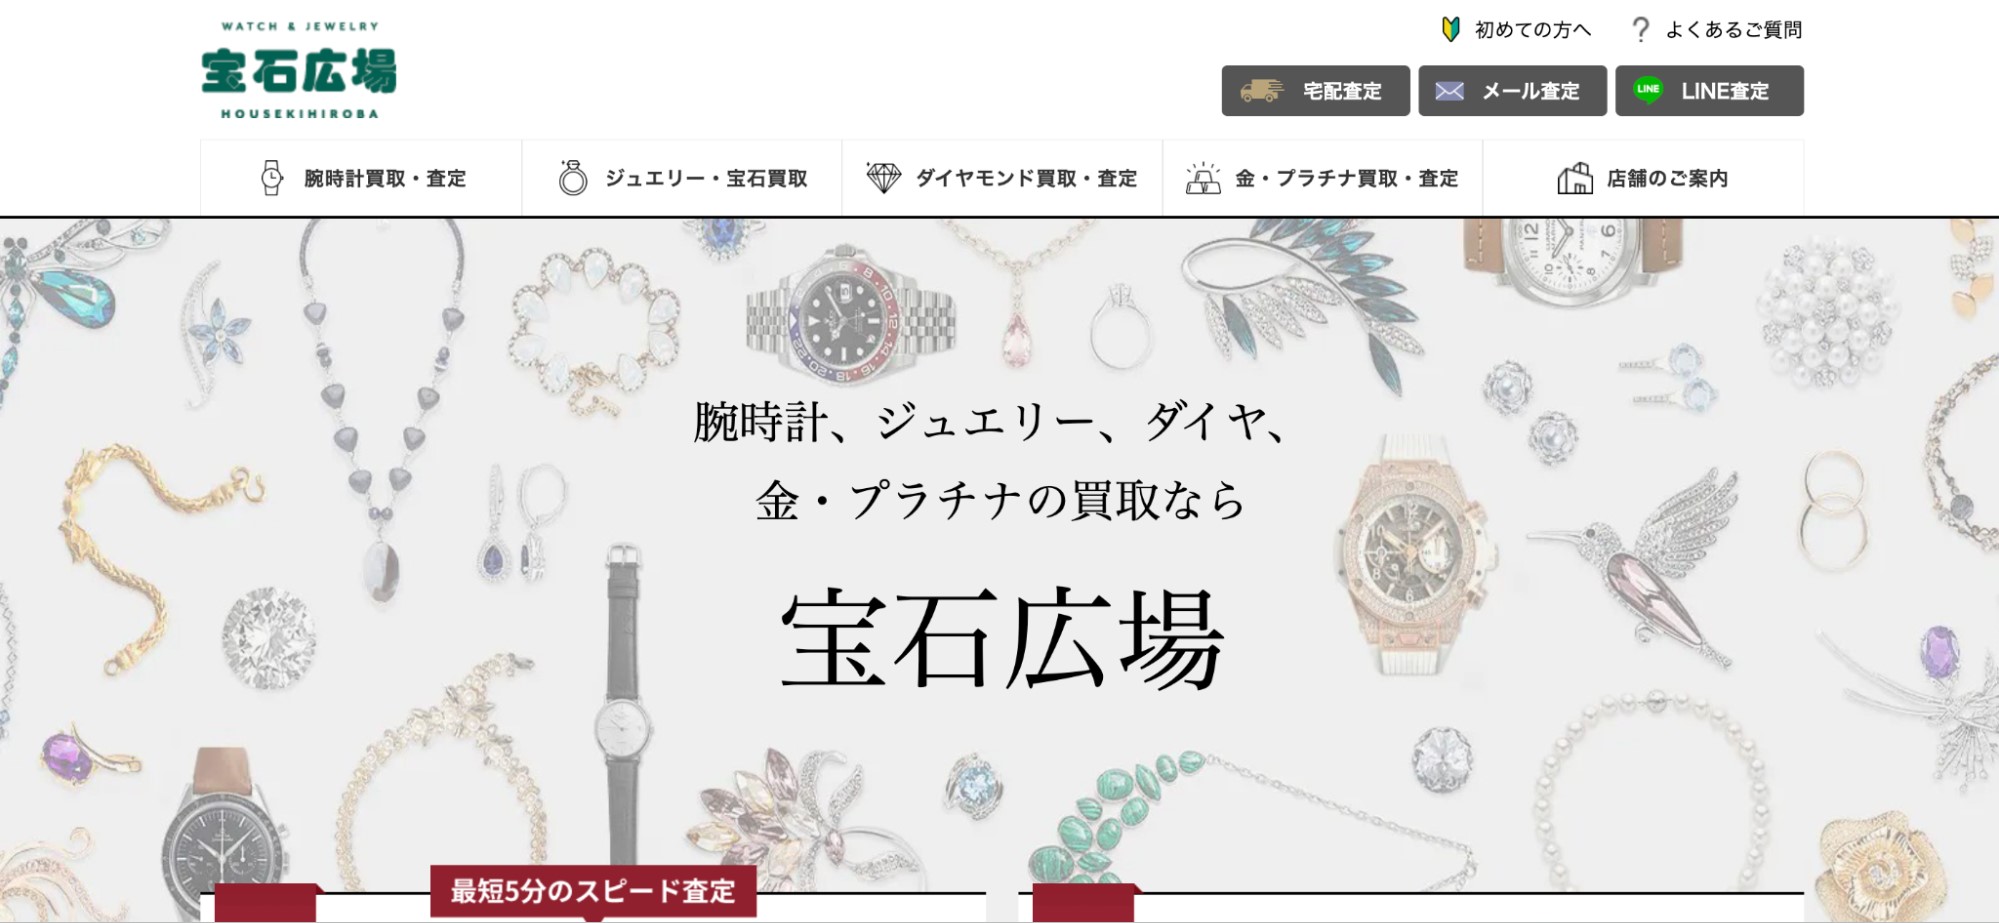 宝石広場公式サイトのトップページ